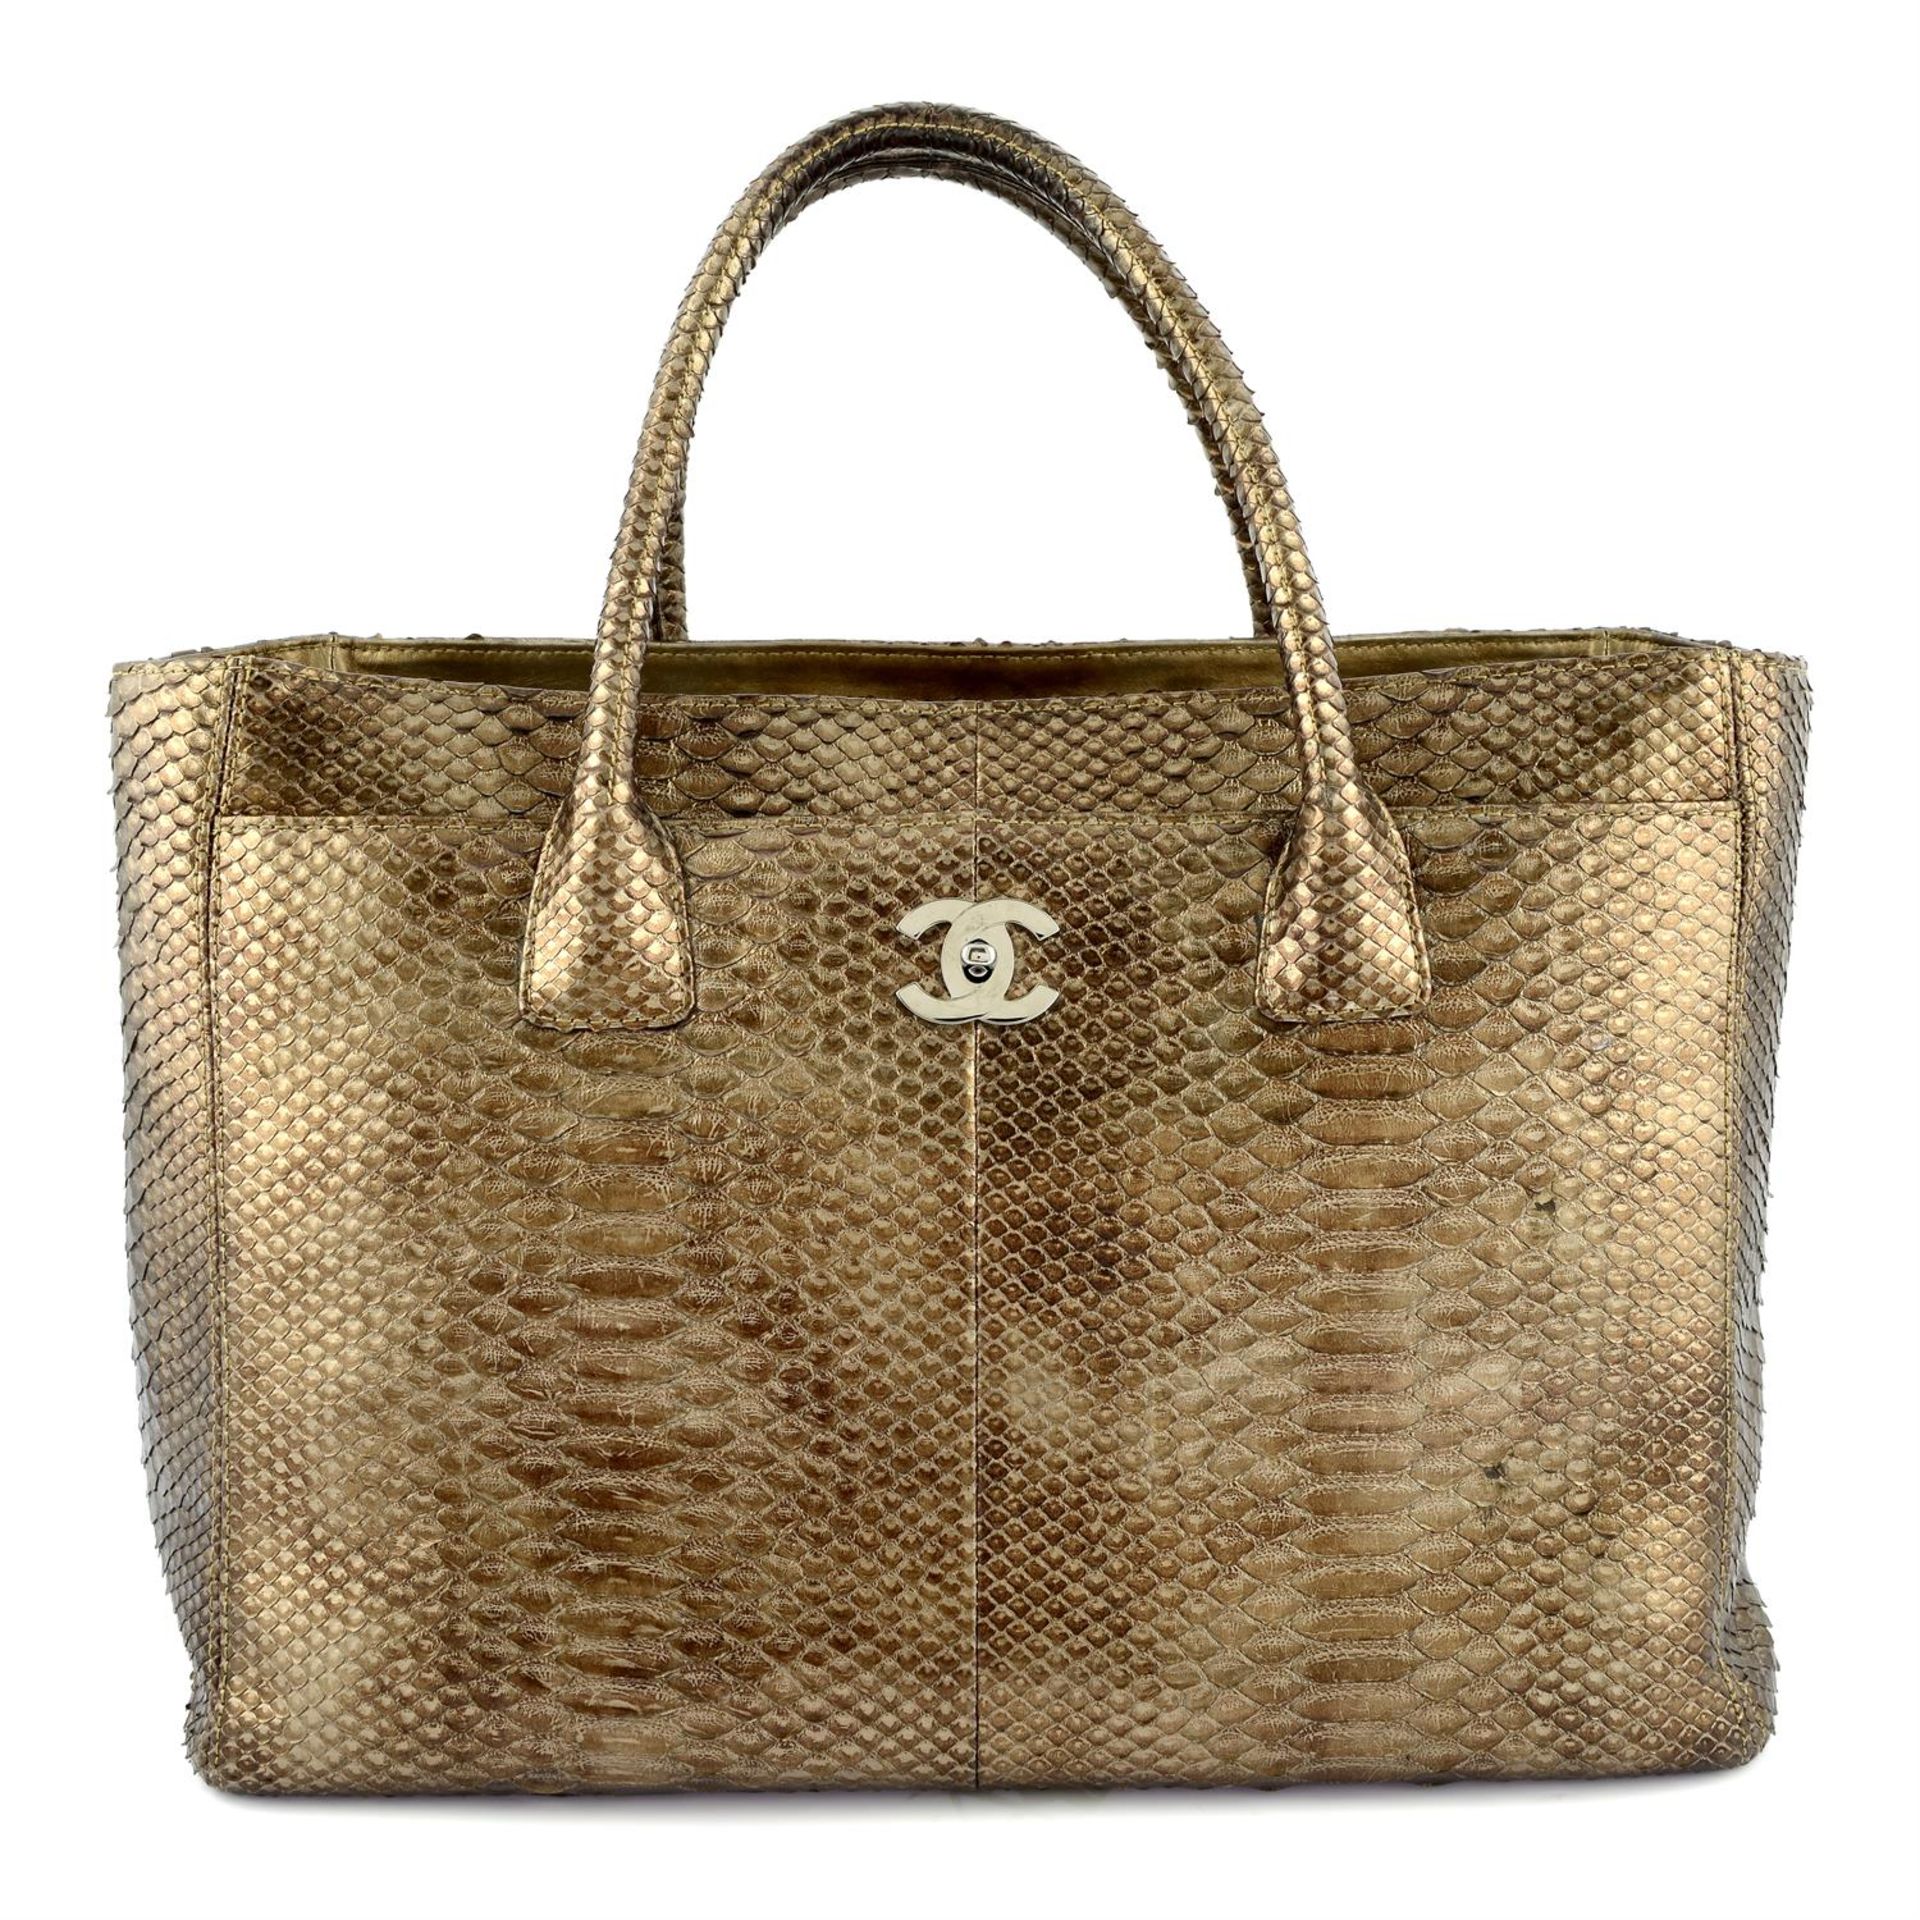 CHANEL - A bronze metallic Python handbag - Image 2 of 5